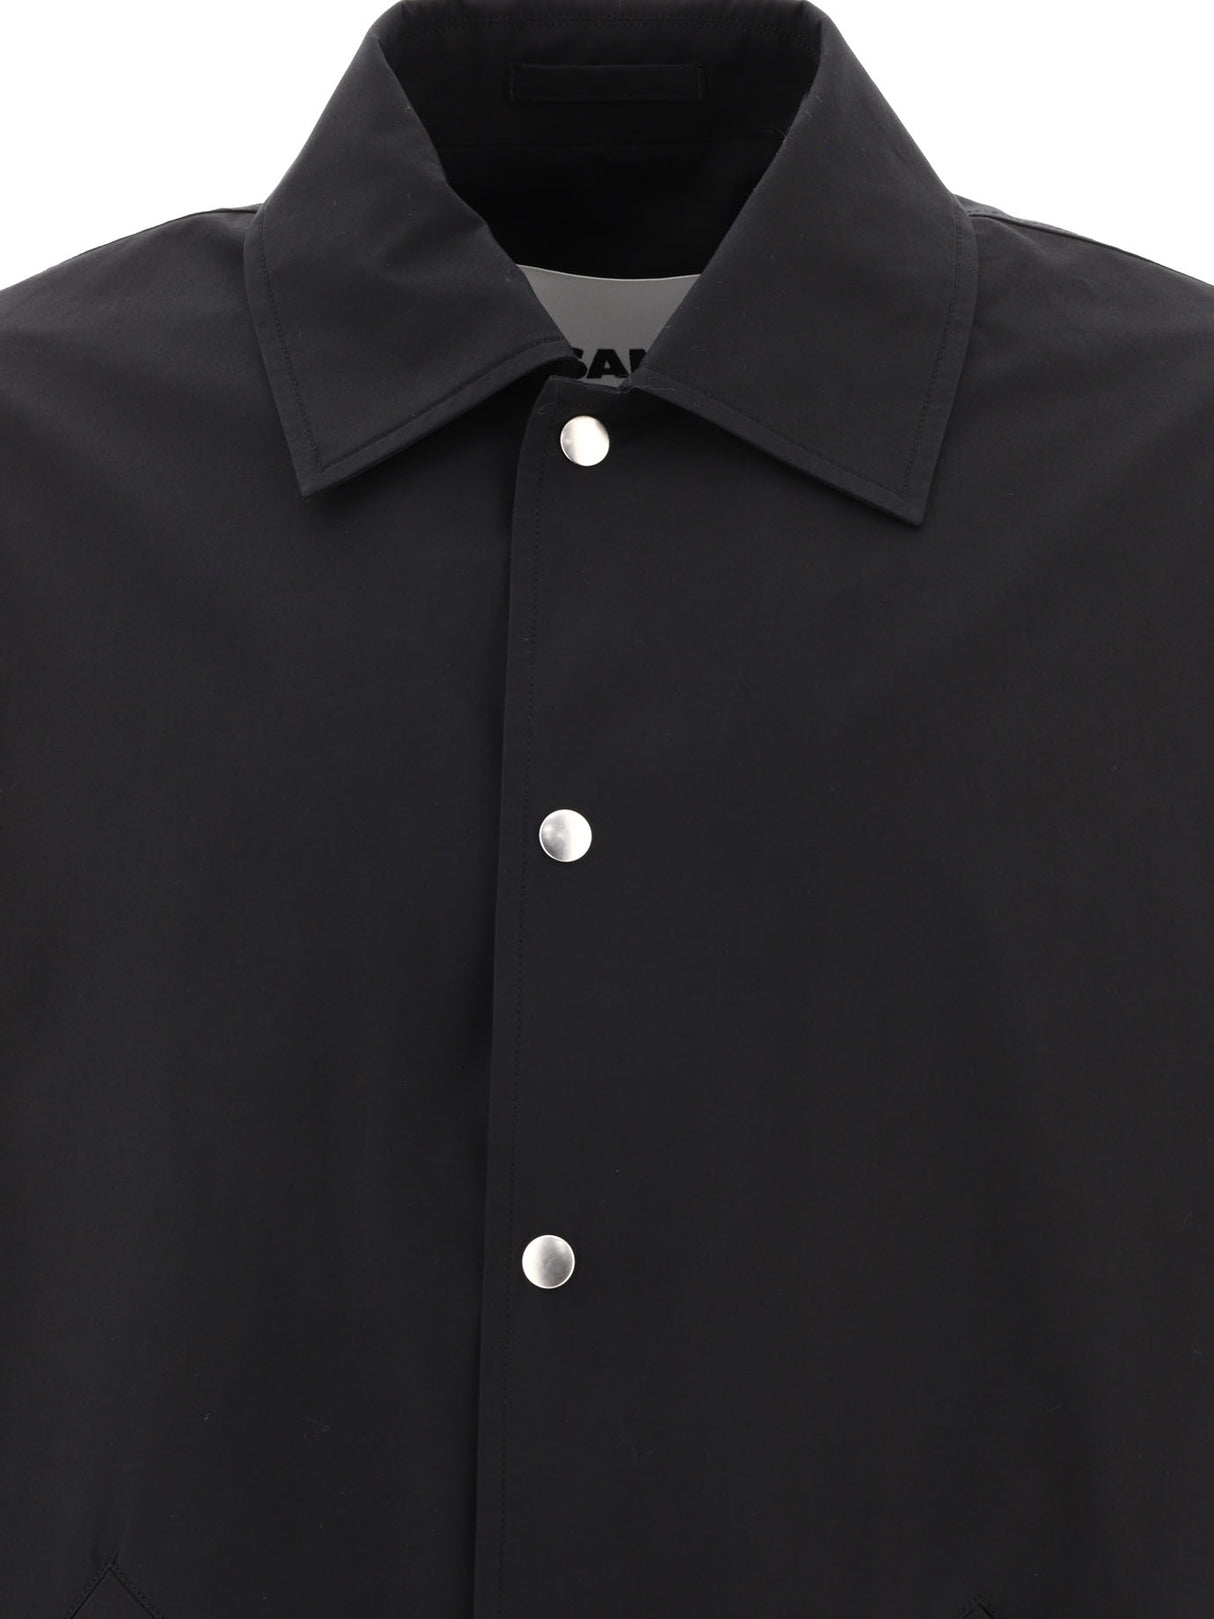 Áo khoác đen in logo nam thời trang